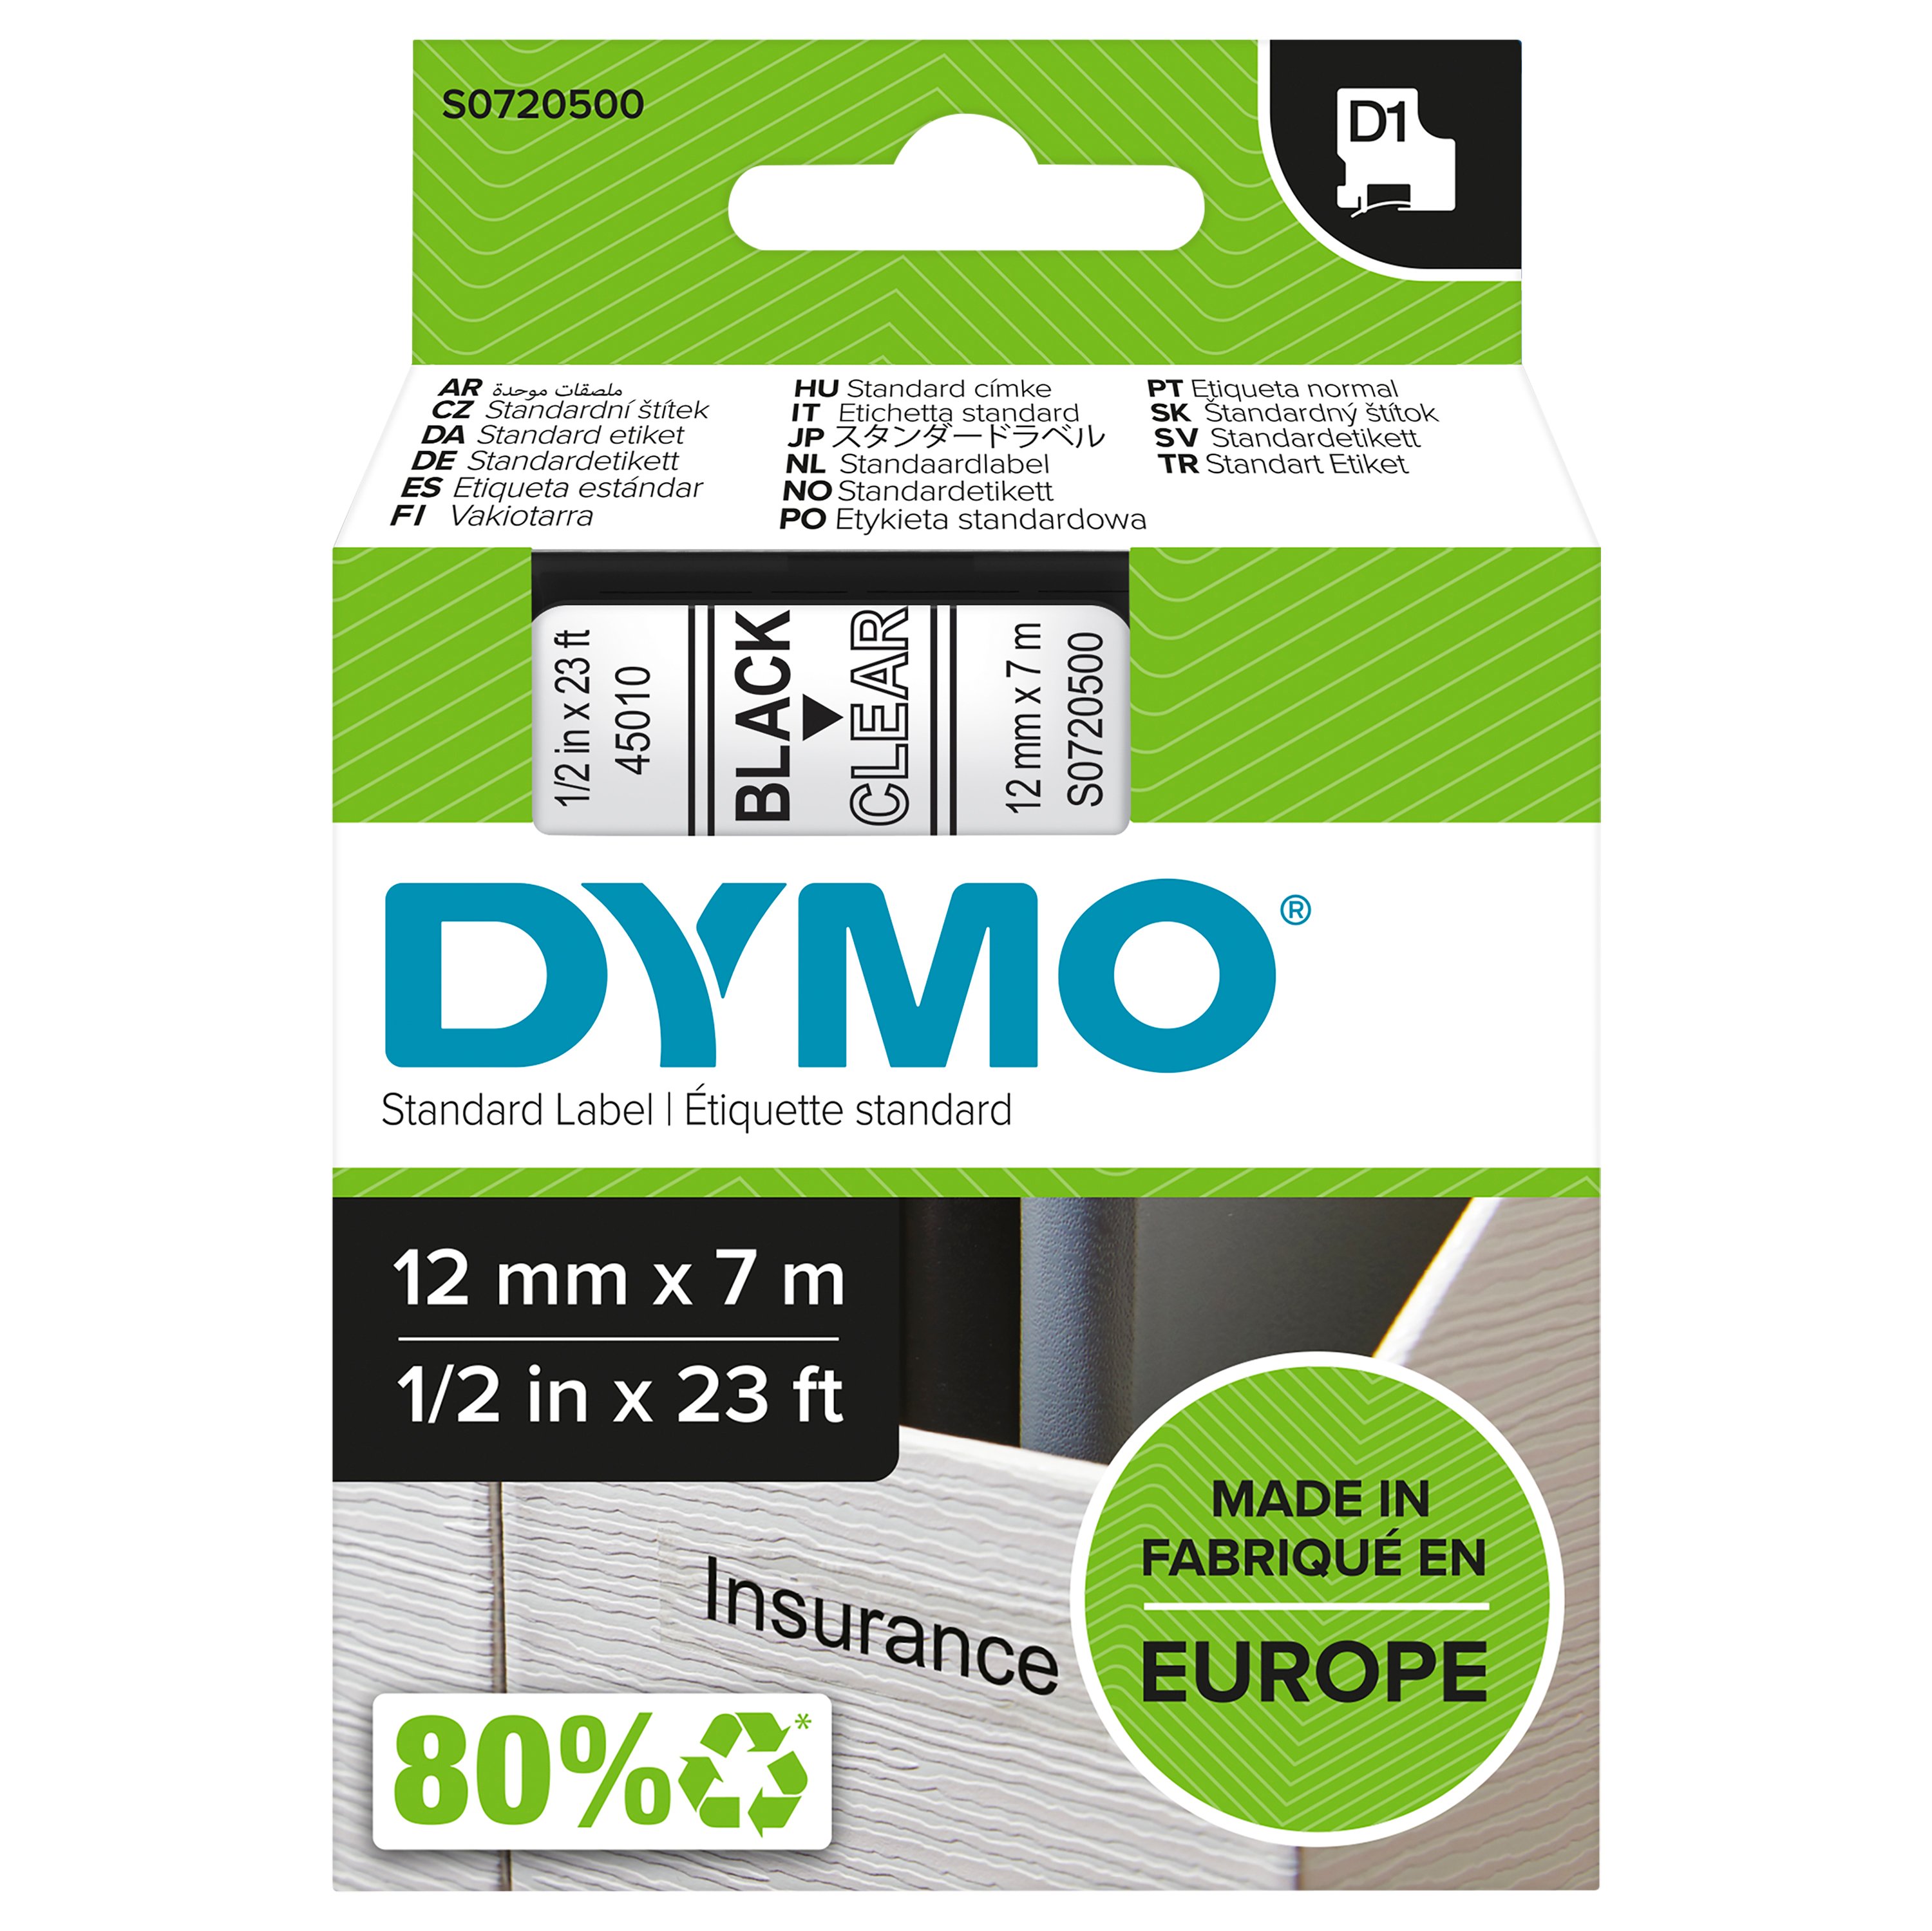 DYMO - D1® Tape 12mm x 7m black on transparent (S0720500) - Kontor og skoleutstyr